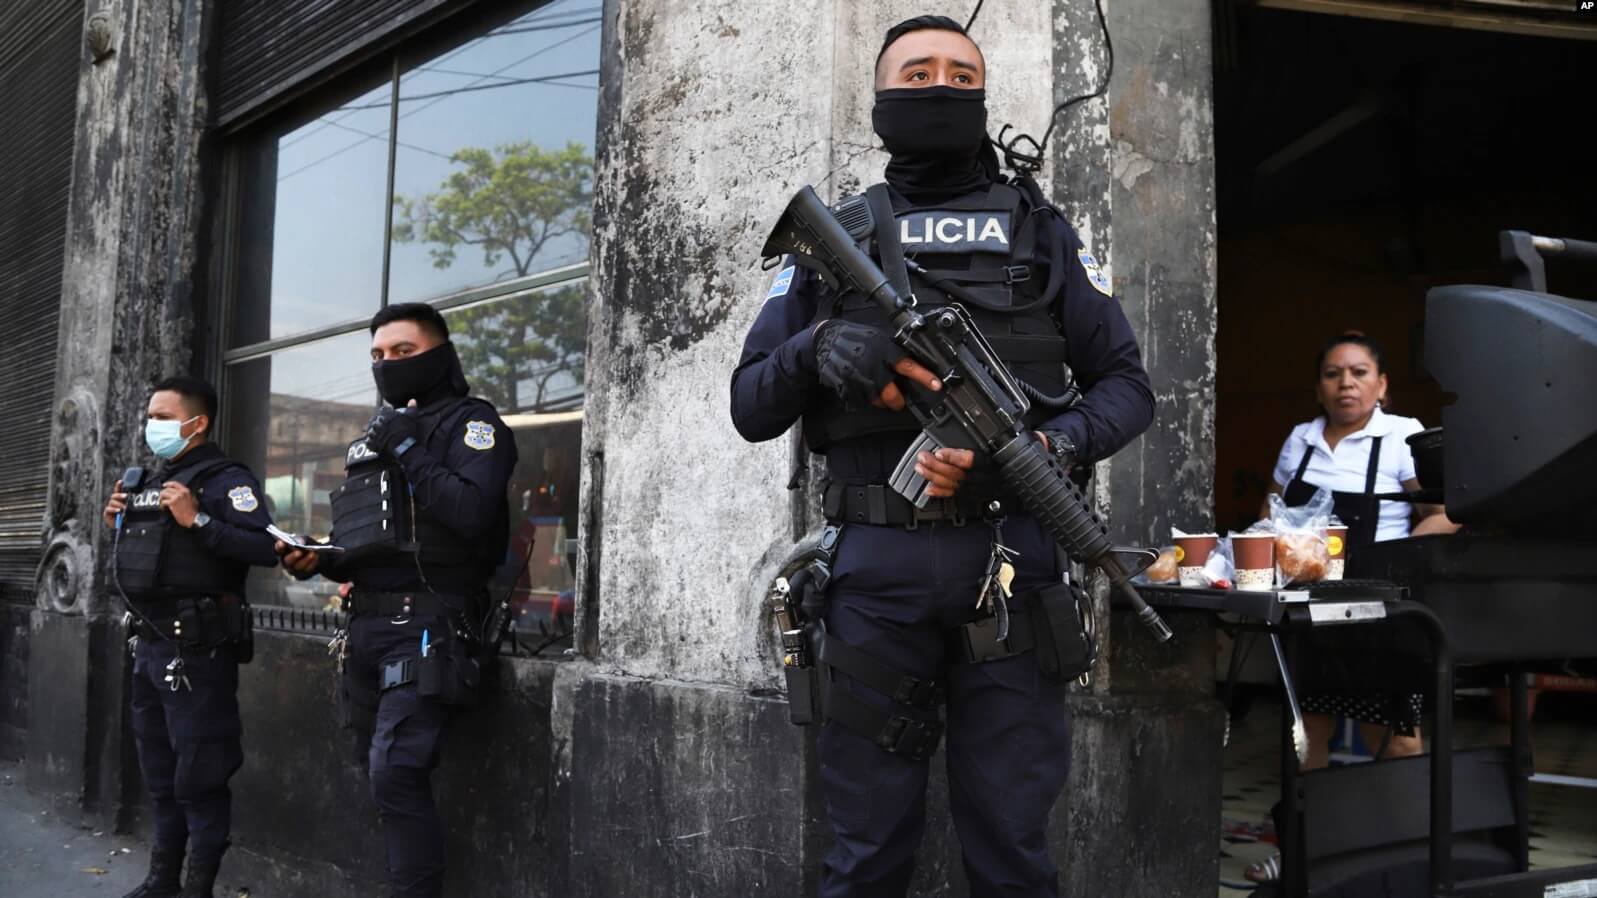 El gobierno salvadoreño tiene como objetivo encarcelar a unos 83,000 pandilleros, antes de suspender el régimen de excepción, aseguró un funcionario del Ministerio de Defensa del país.